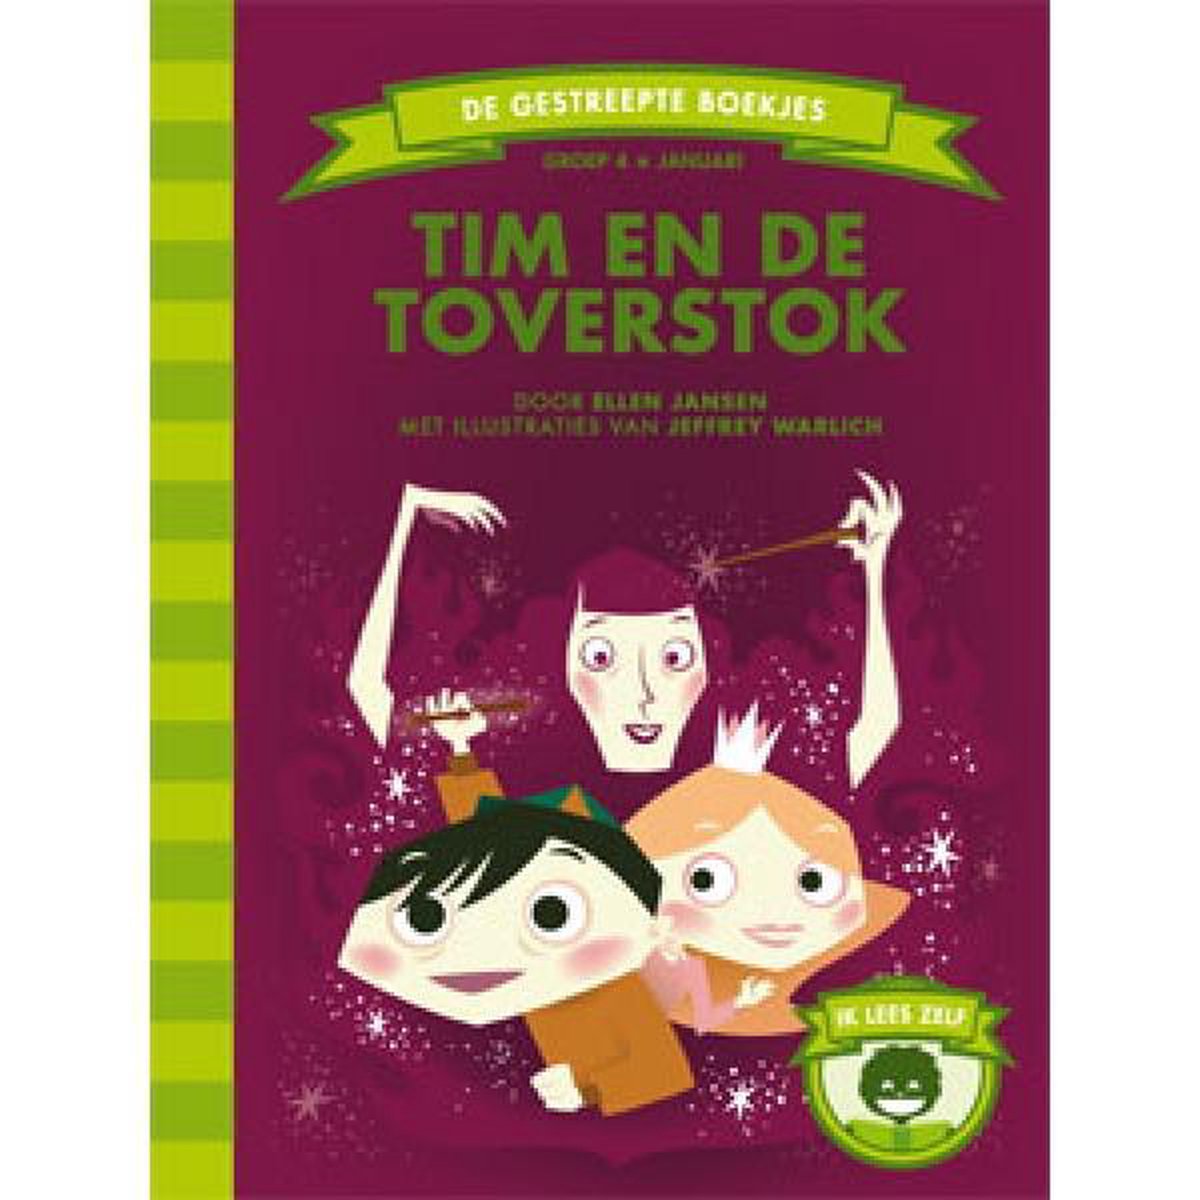 Tim en de toverstok / De Gestreepte Boekjes